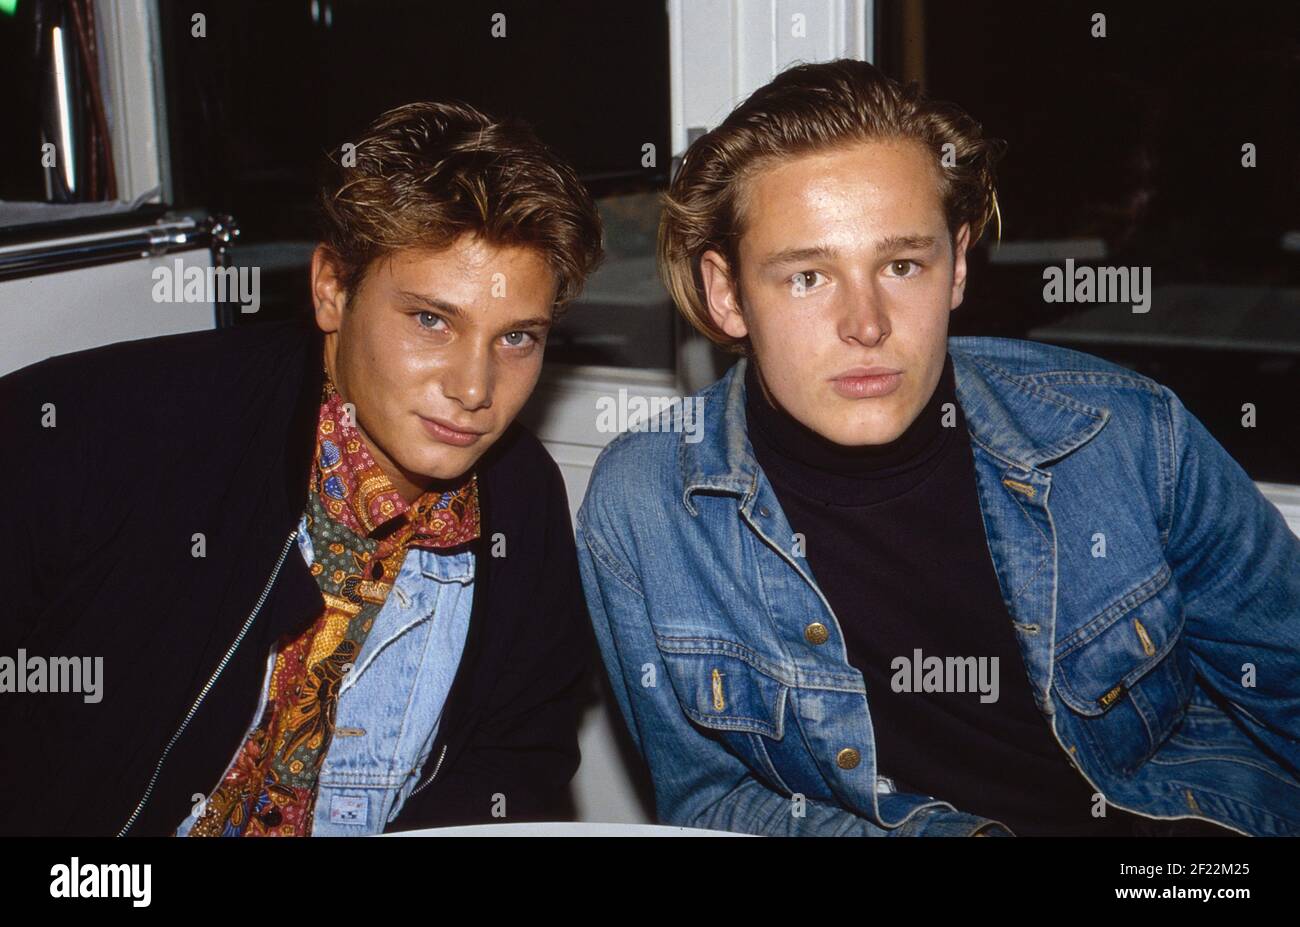 Prominenz auf der IFA en Berlín, Deutschland 1989, hier: Musiker Fabian Harloff und Schauspieler Hendrik Martz Foto de stock